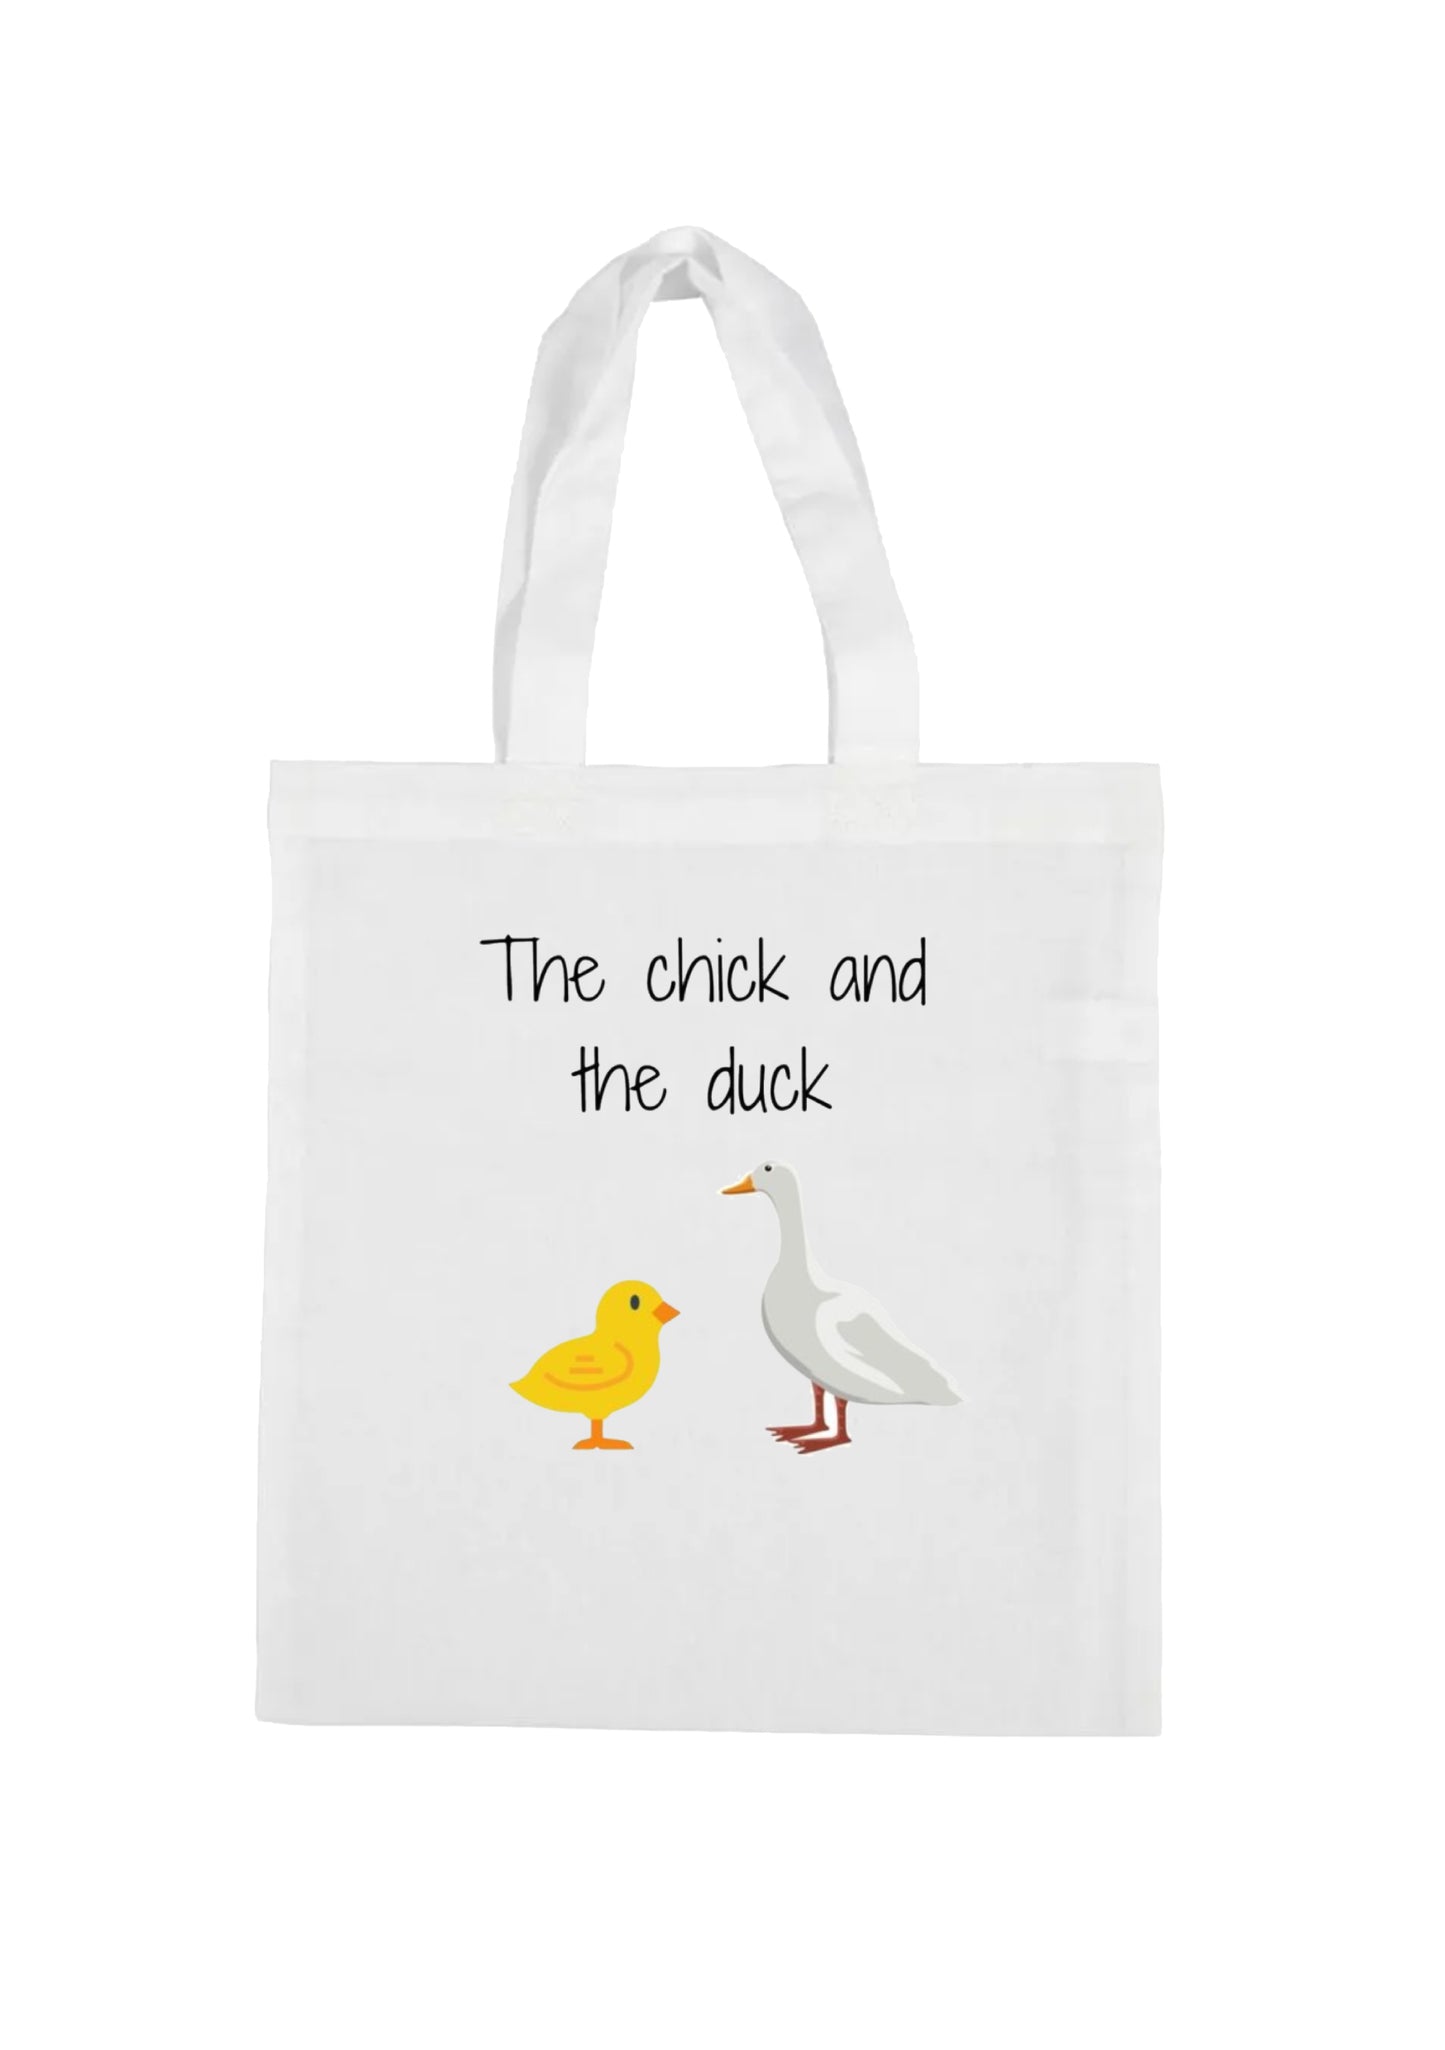 borsa shopping bag- papera e pulcino tje chick and the duck amici